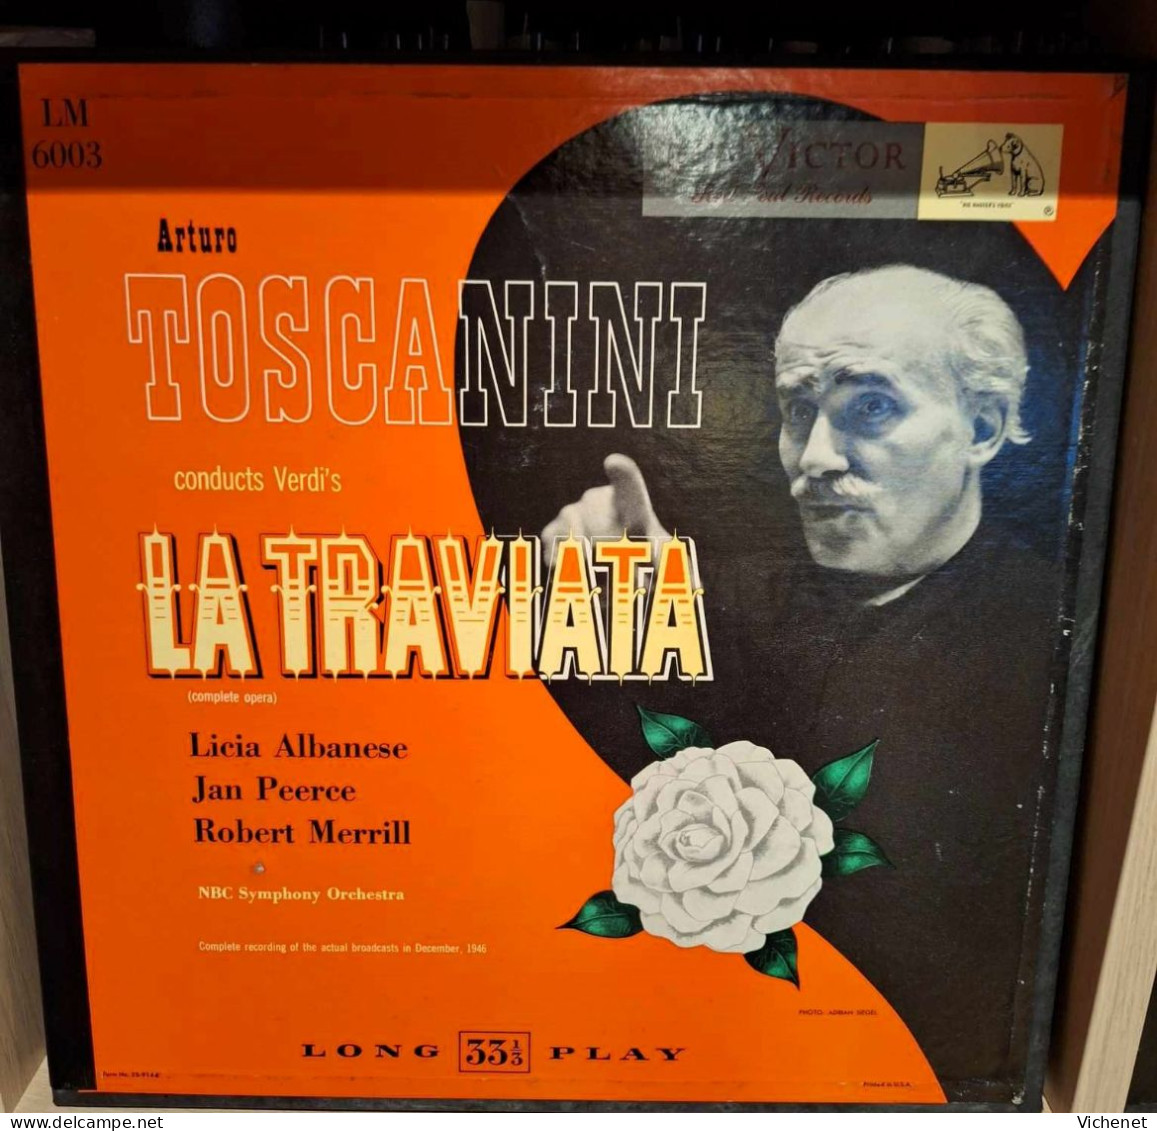 Verdi - Toscanini - LaTraviata (Complete Opera) (coffret 2 LP's + Booklet) - Opera